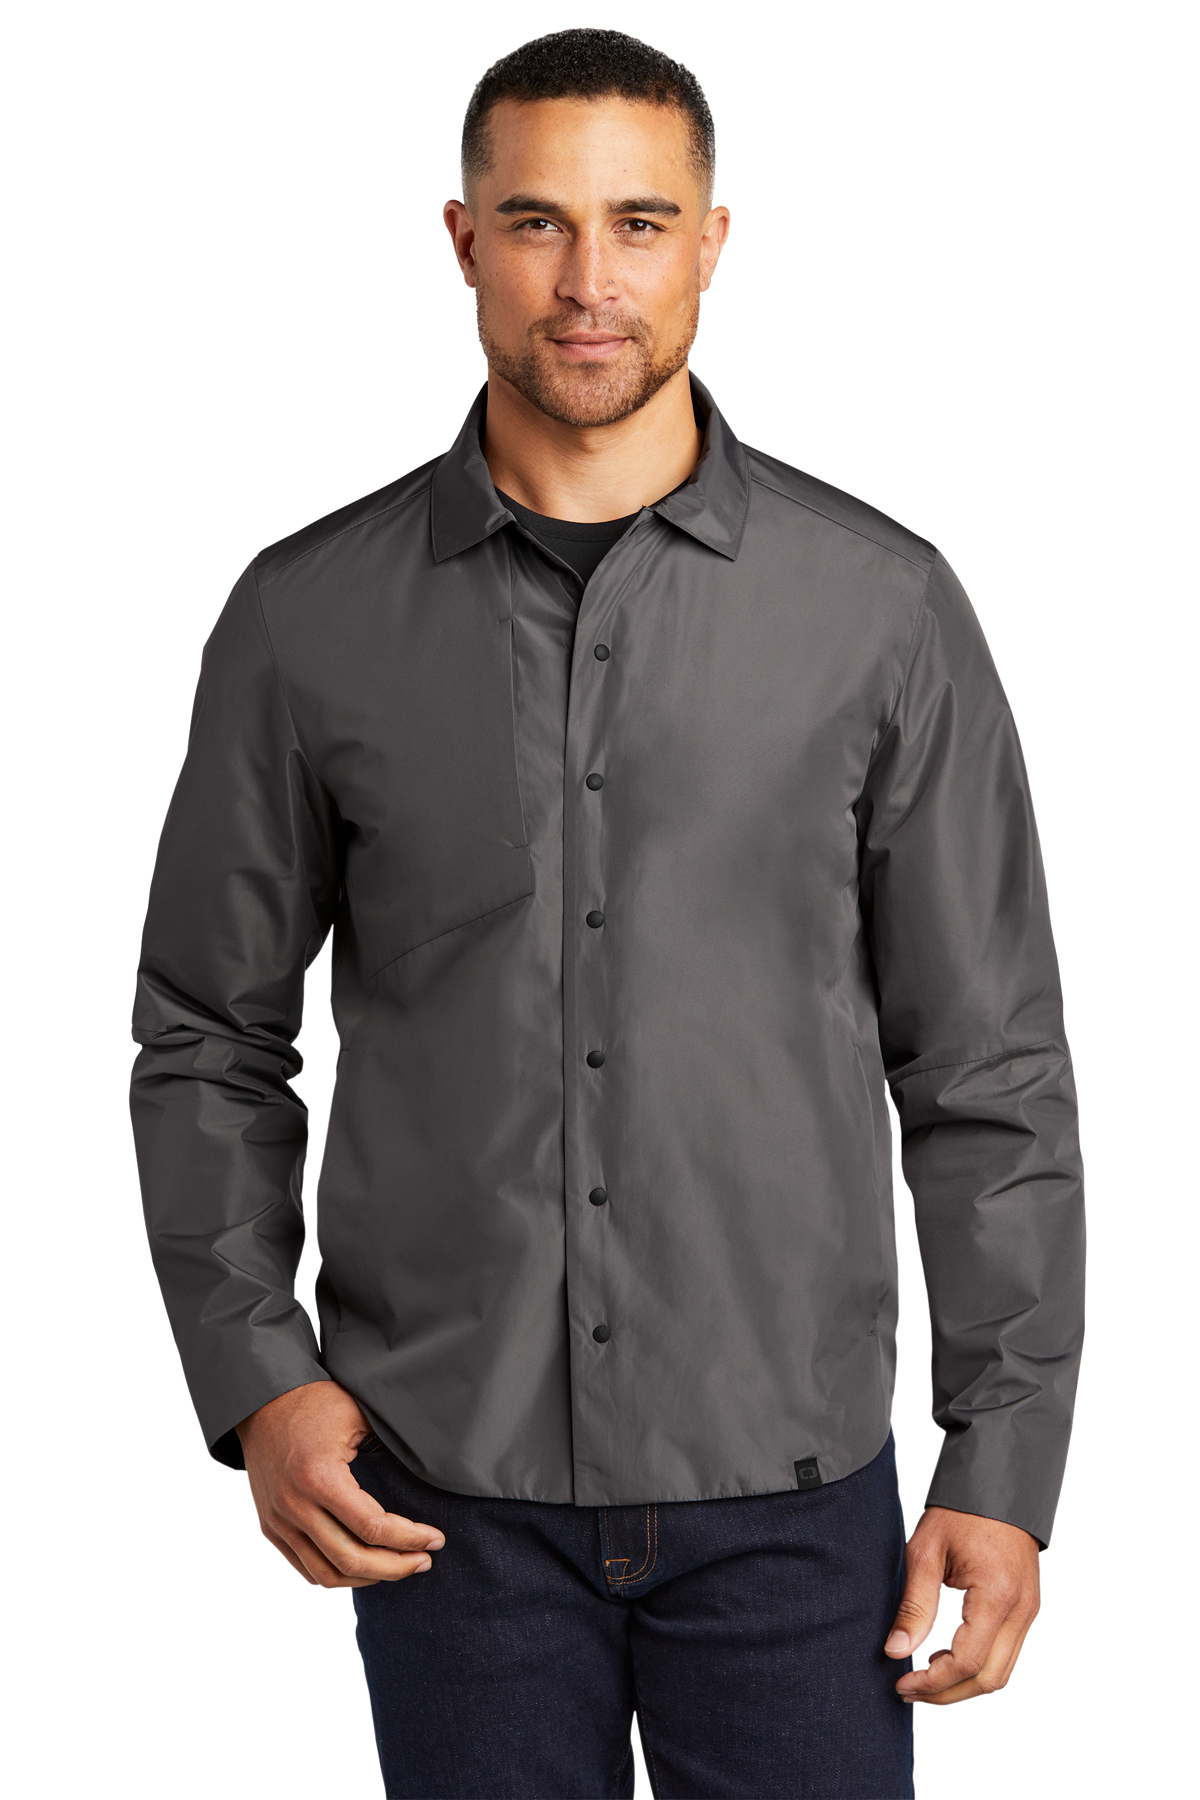 OGIO Reverse Shirt Jacket | Product | SanMar